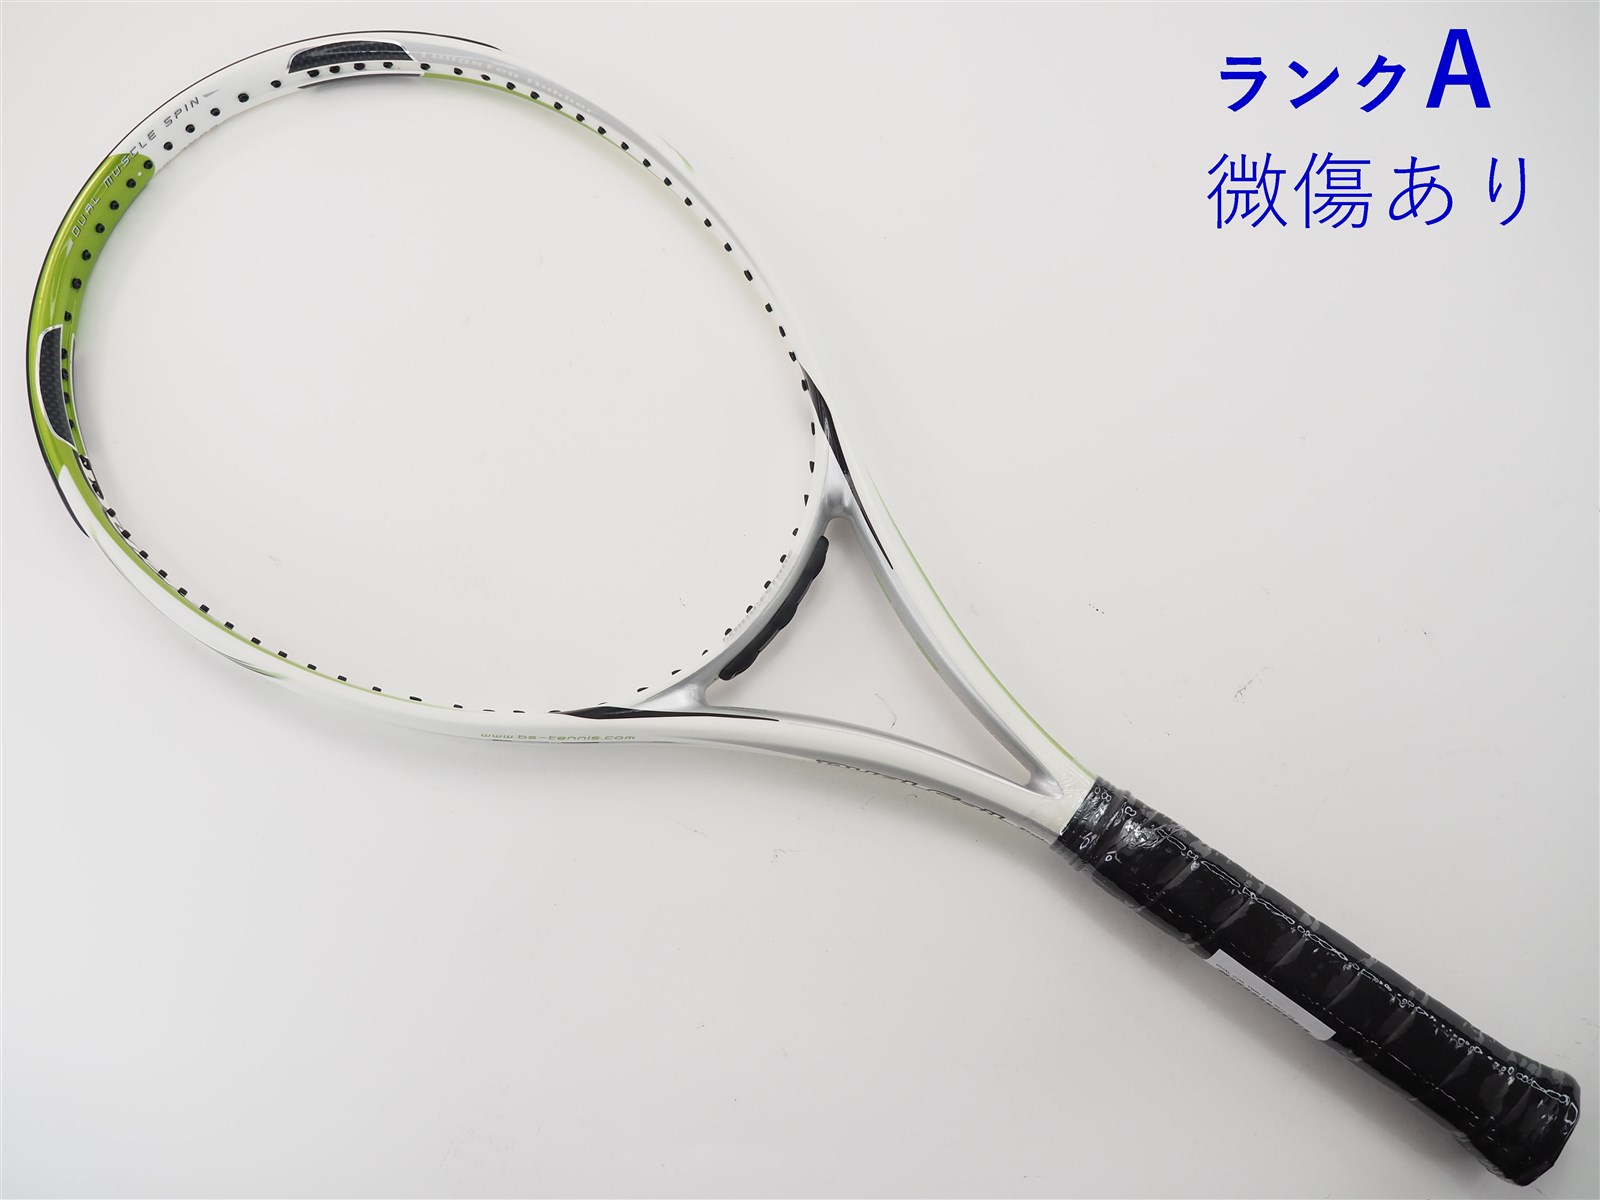 テニスラケット ブリヂストン RS 110 スピン (G2相当)BRIDGESTONE RS 110 SPIN